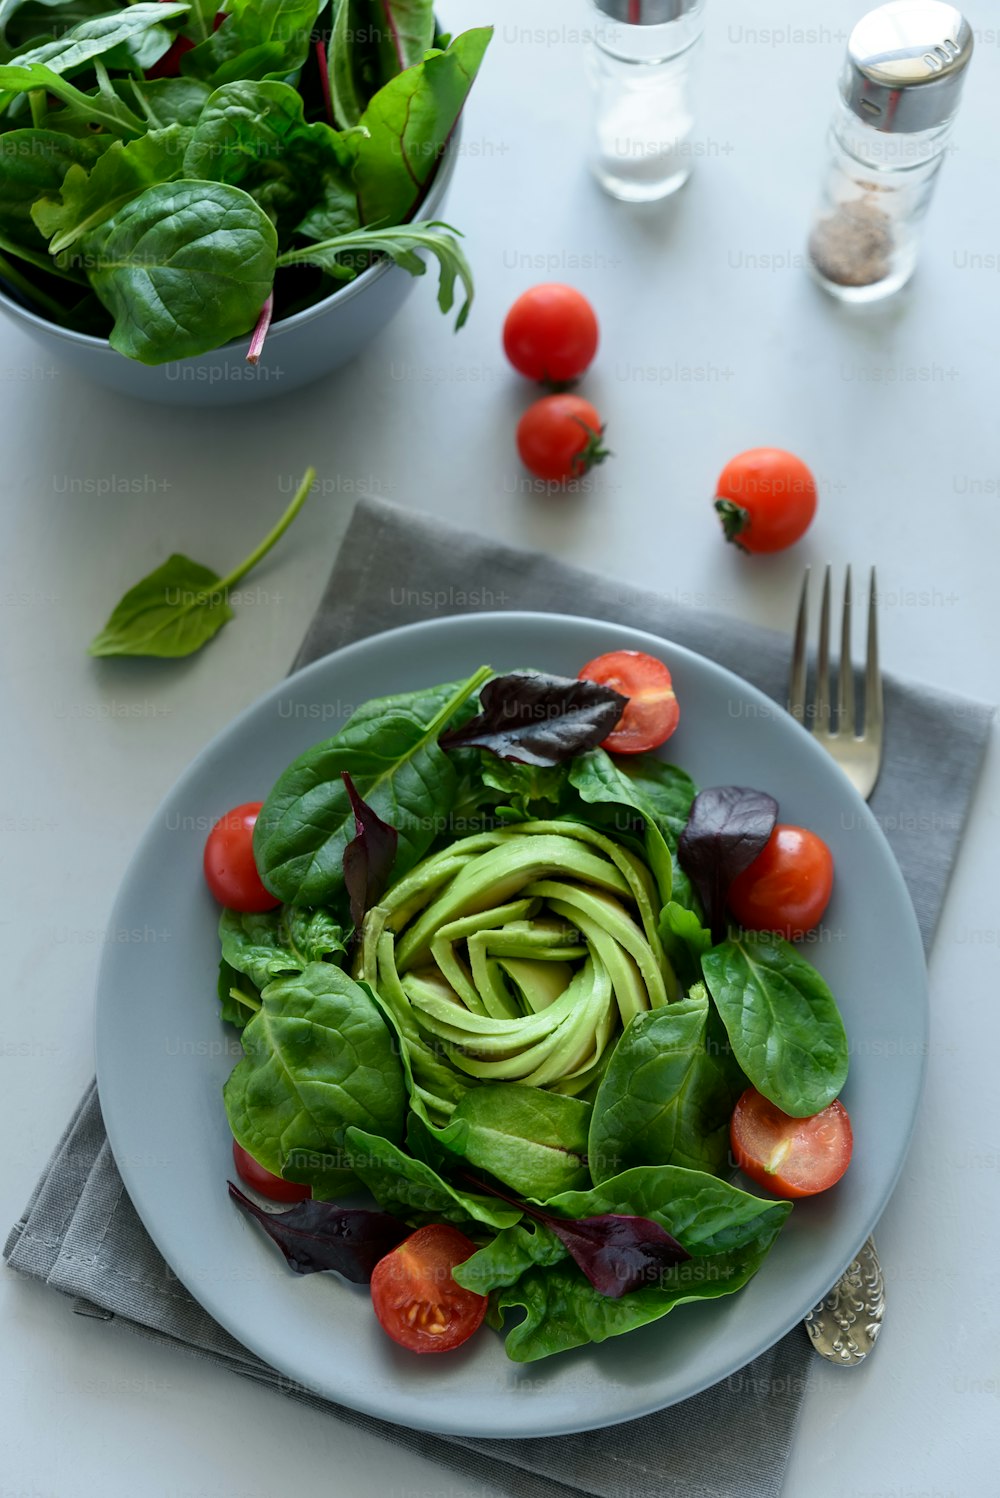 Mélange de salade avec avocat, épinards, tomates et feuilles de betterave sur fond en bois gris. Concept de cuisine végétarienne. Mise au point sélective.